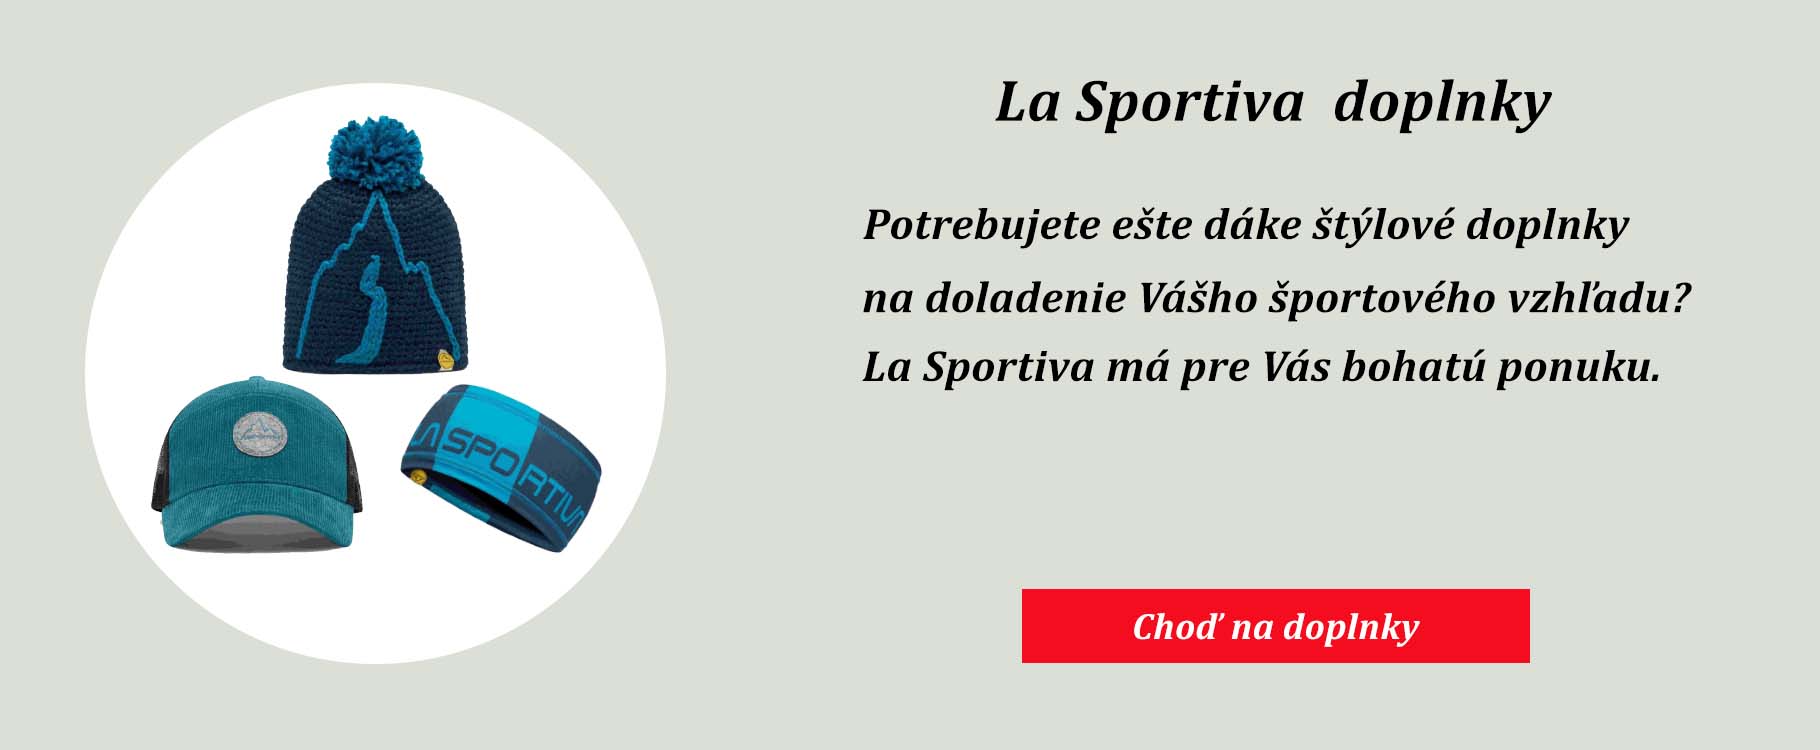 La Sportiva doplnky